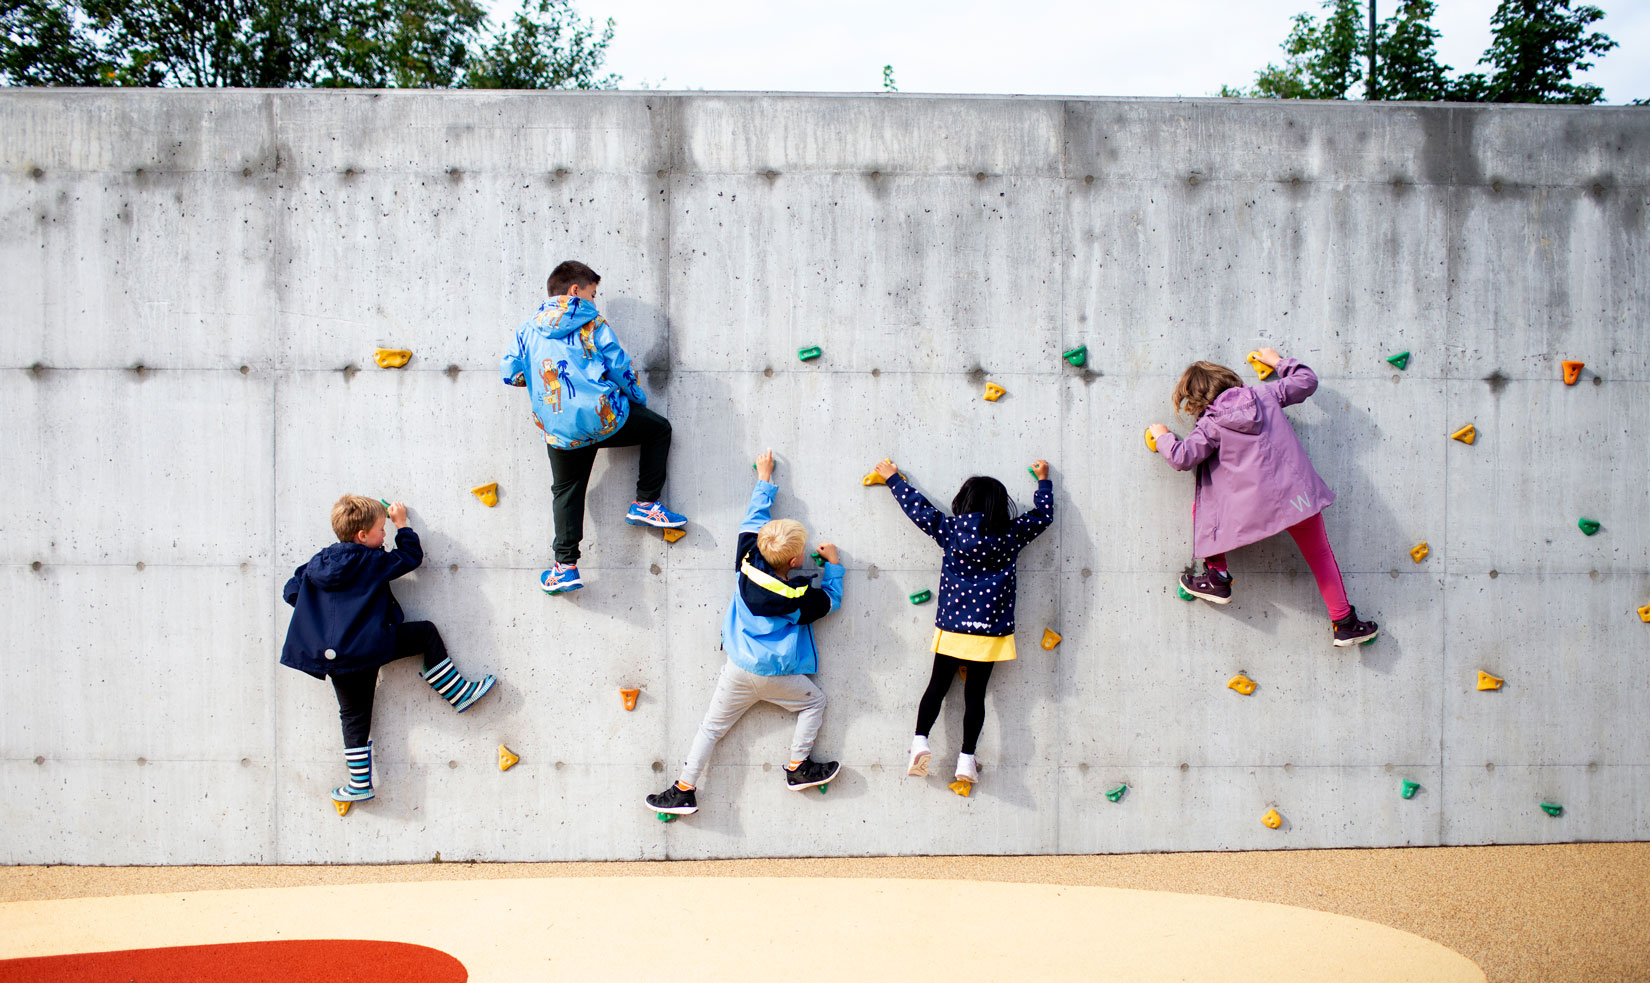 Skolebarn som klatrer på en skoleveg. 